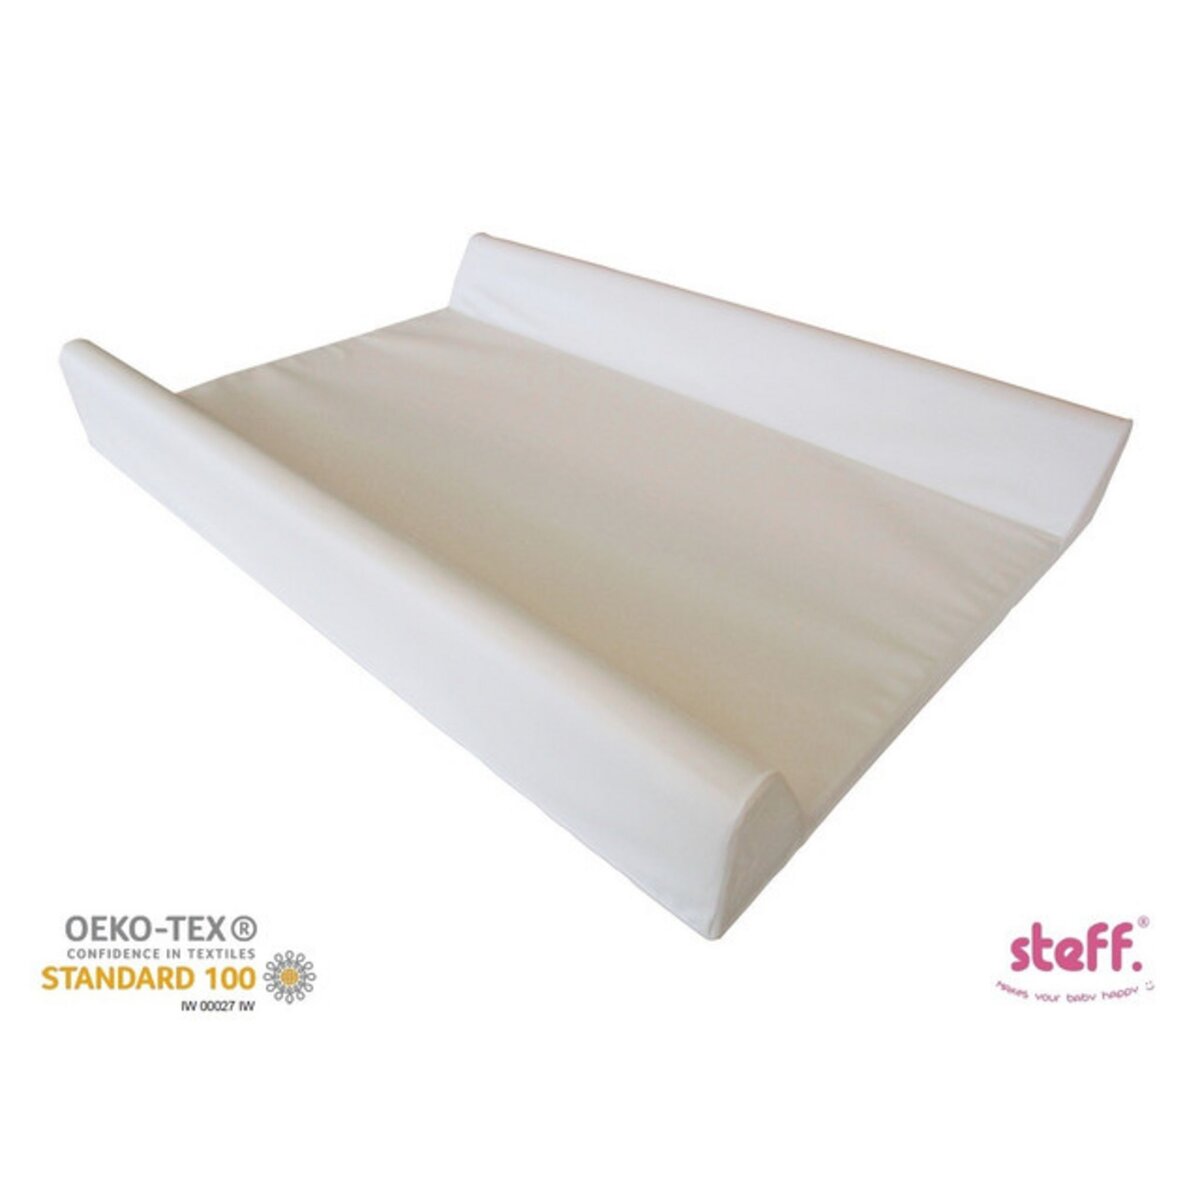  Steff - Matelas à langer avec rebords - 70x50 cm - Blanc - Label de qualité OEKO-TEX standard 100